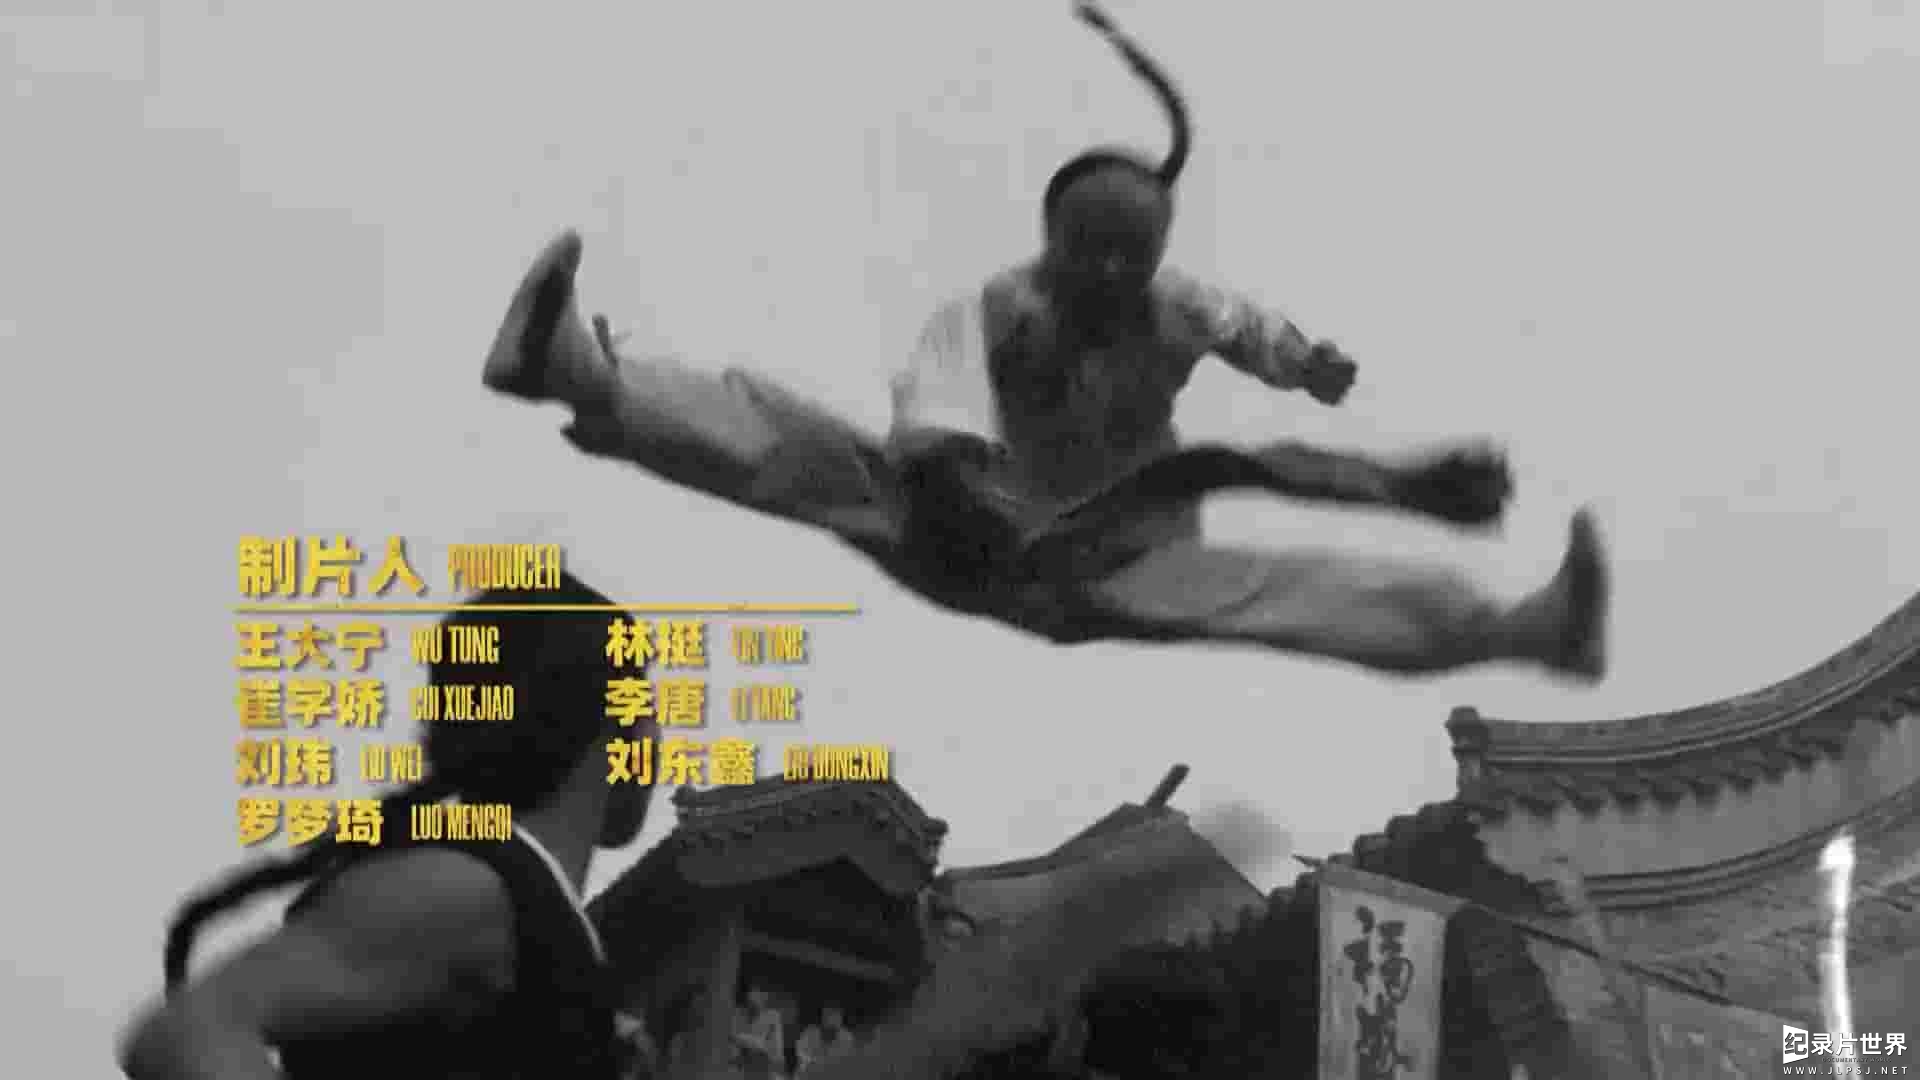  国产纪录片《龙虎武师 KungFu Stuntmen》全1集